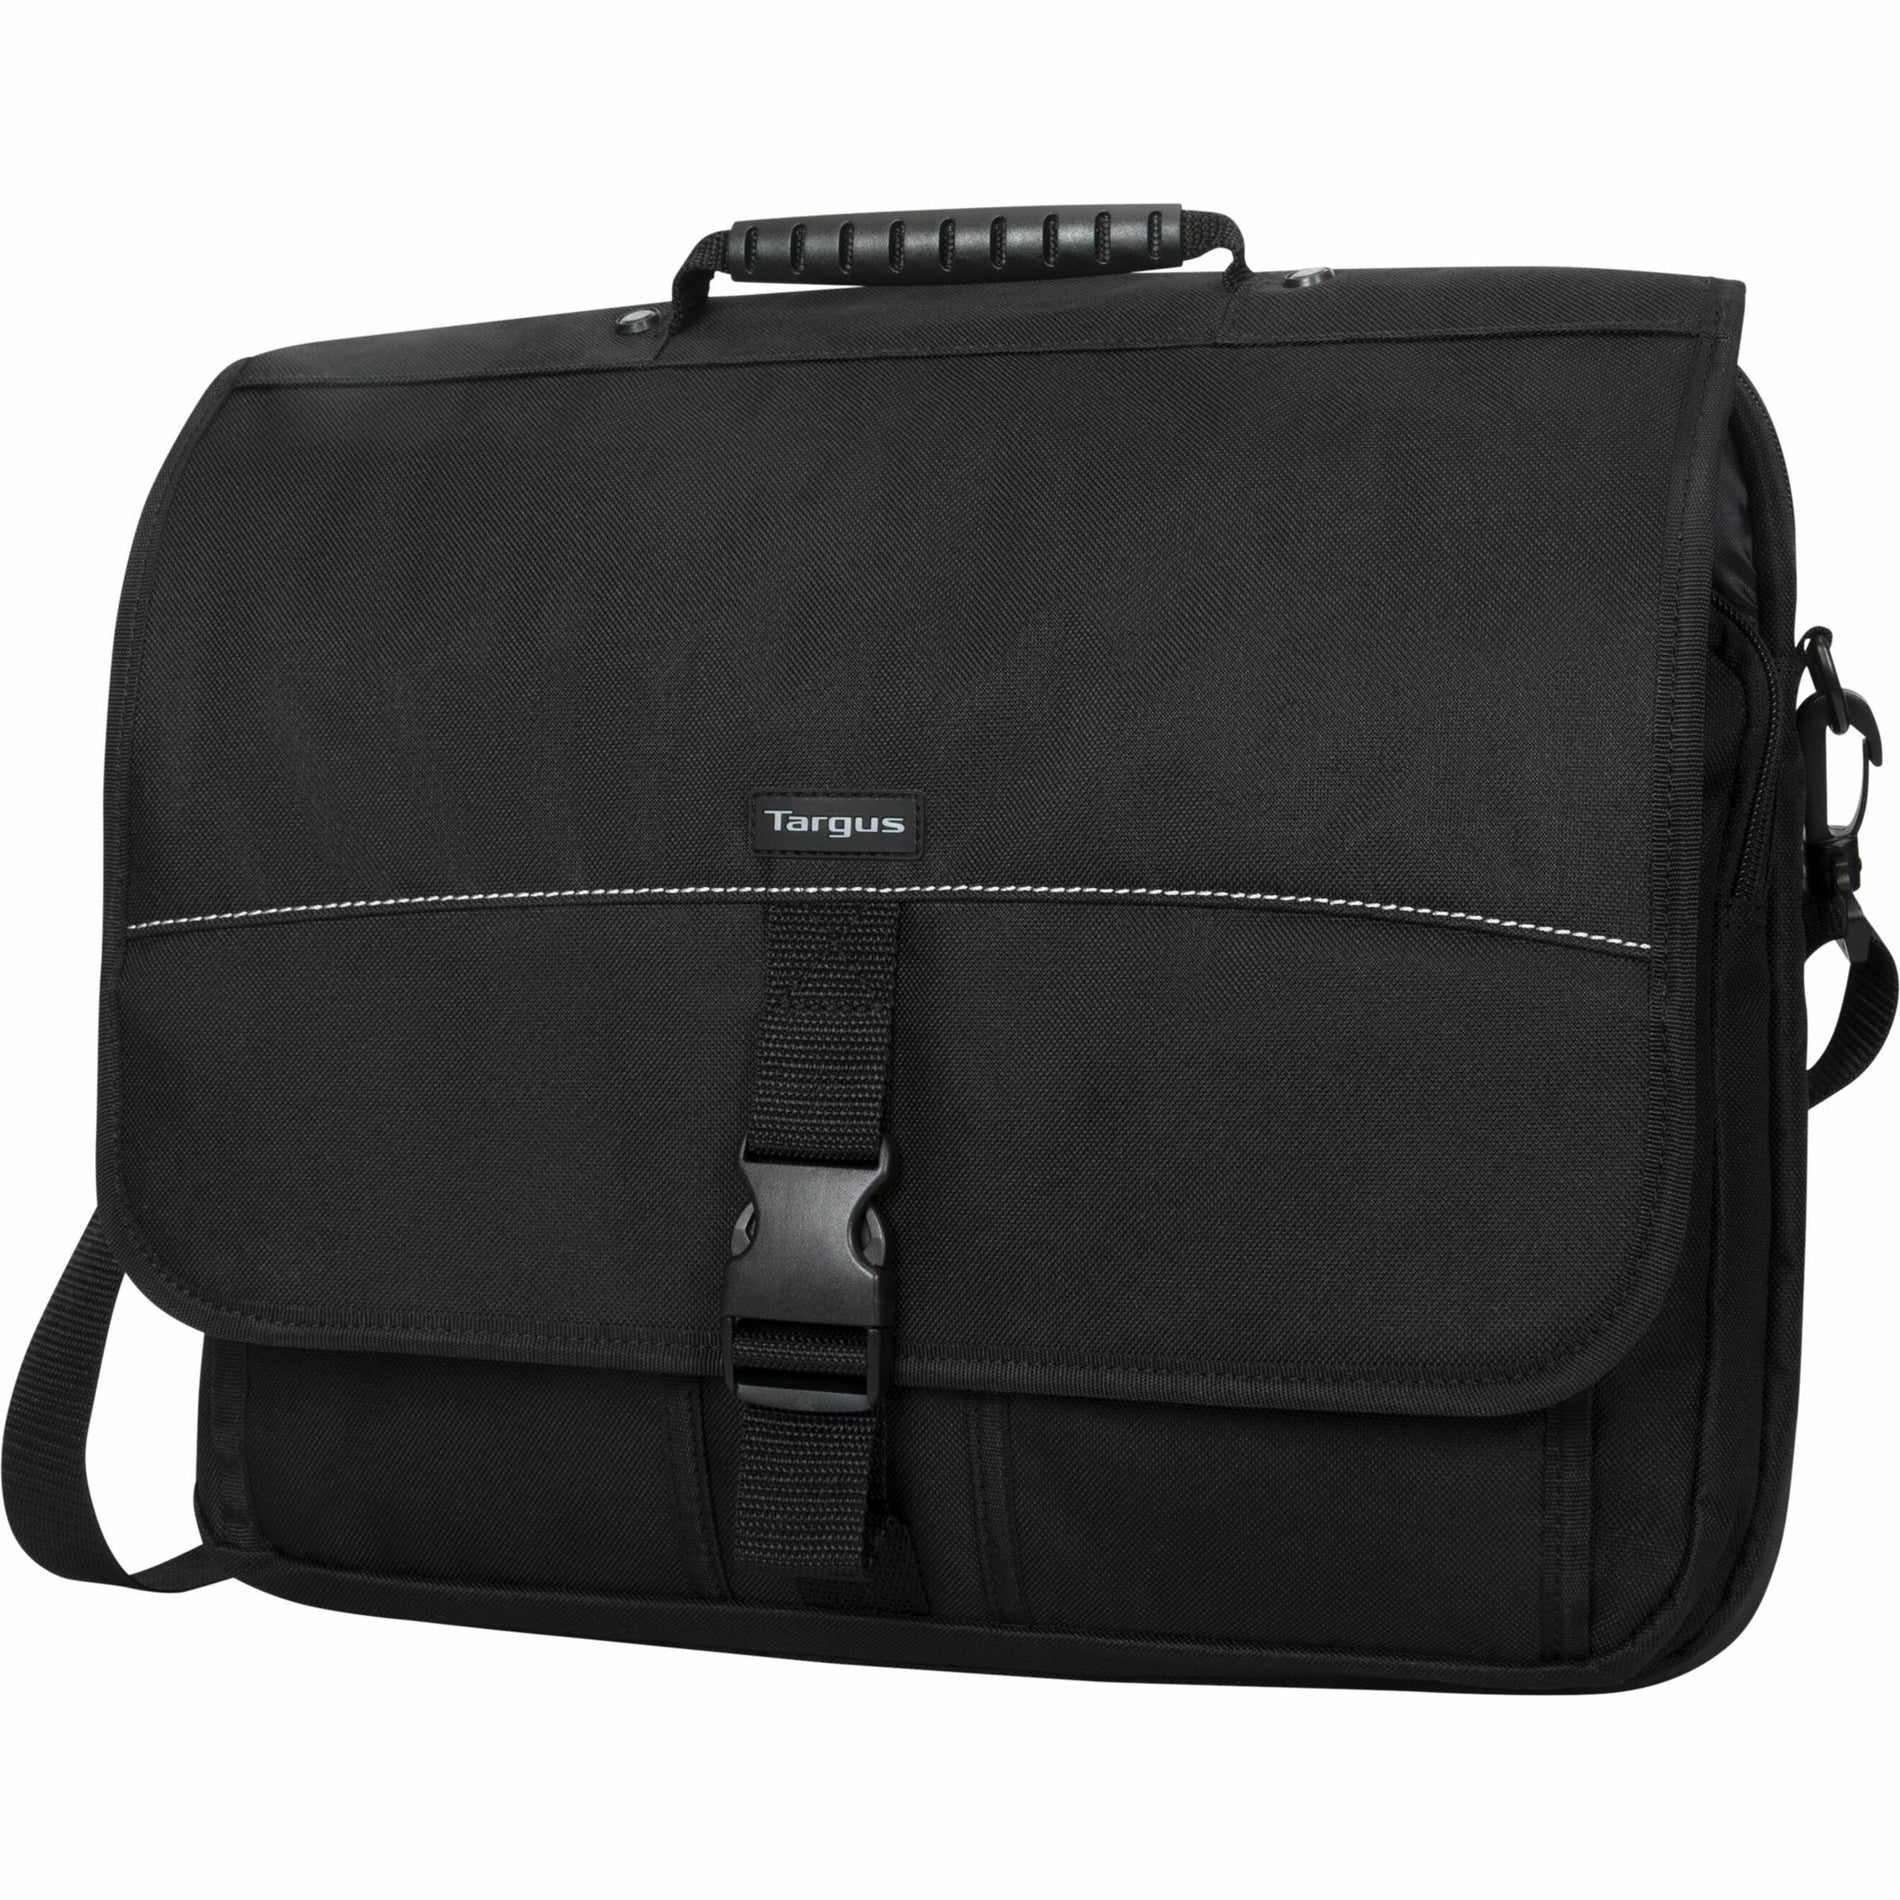 Targus TCM004US 15.6" Messenger Laptop Case, Padded Interior, Shoulder Strap, Handle, Lifetime Warranty